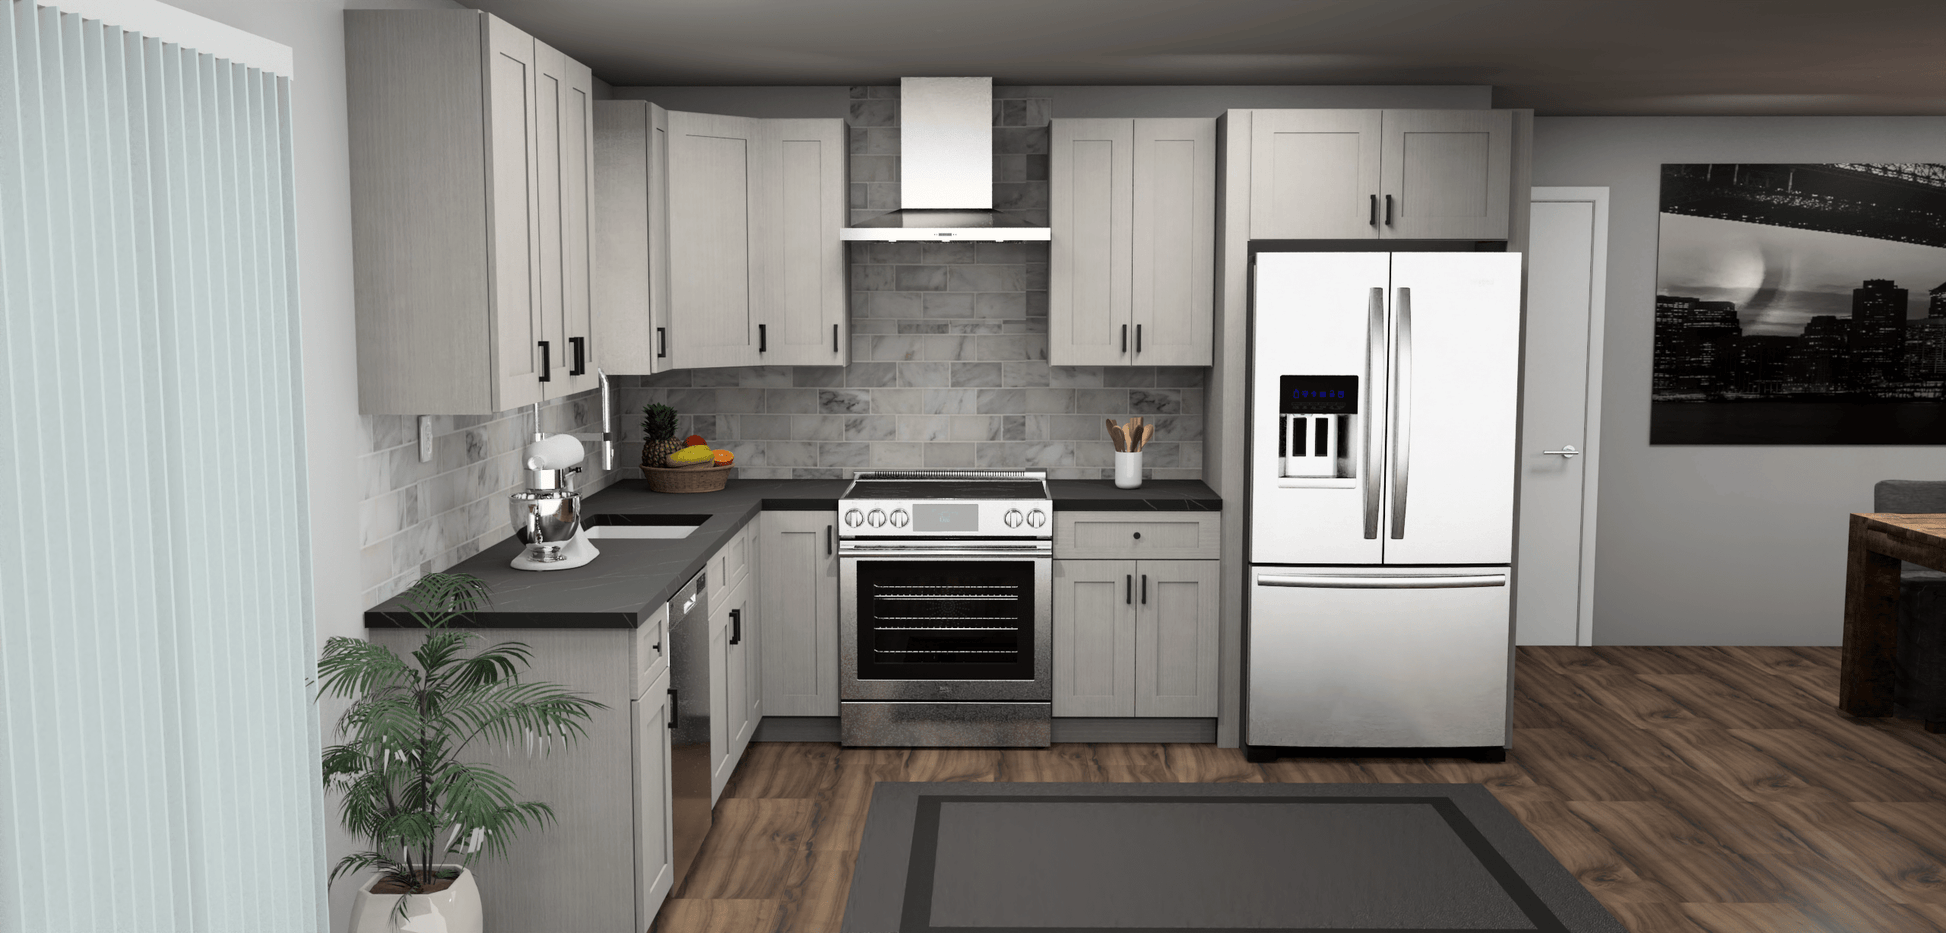 Fabuwood Allure Galaxy Horizon 9 x 11 L Shaped Kitchen Front Layout Photo